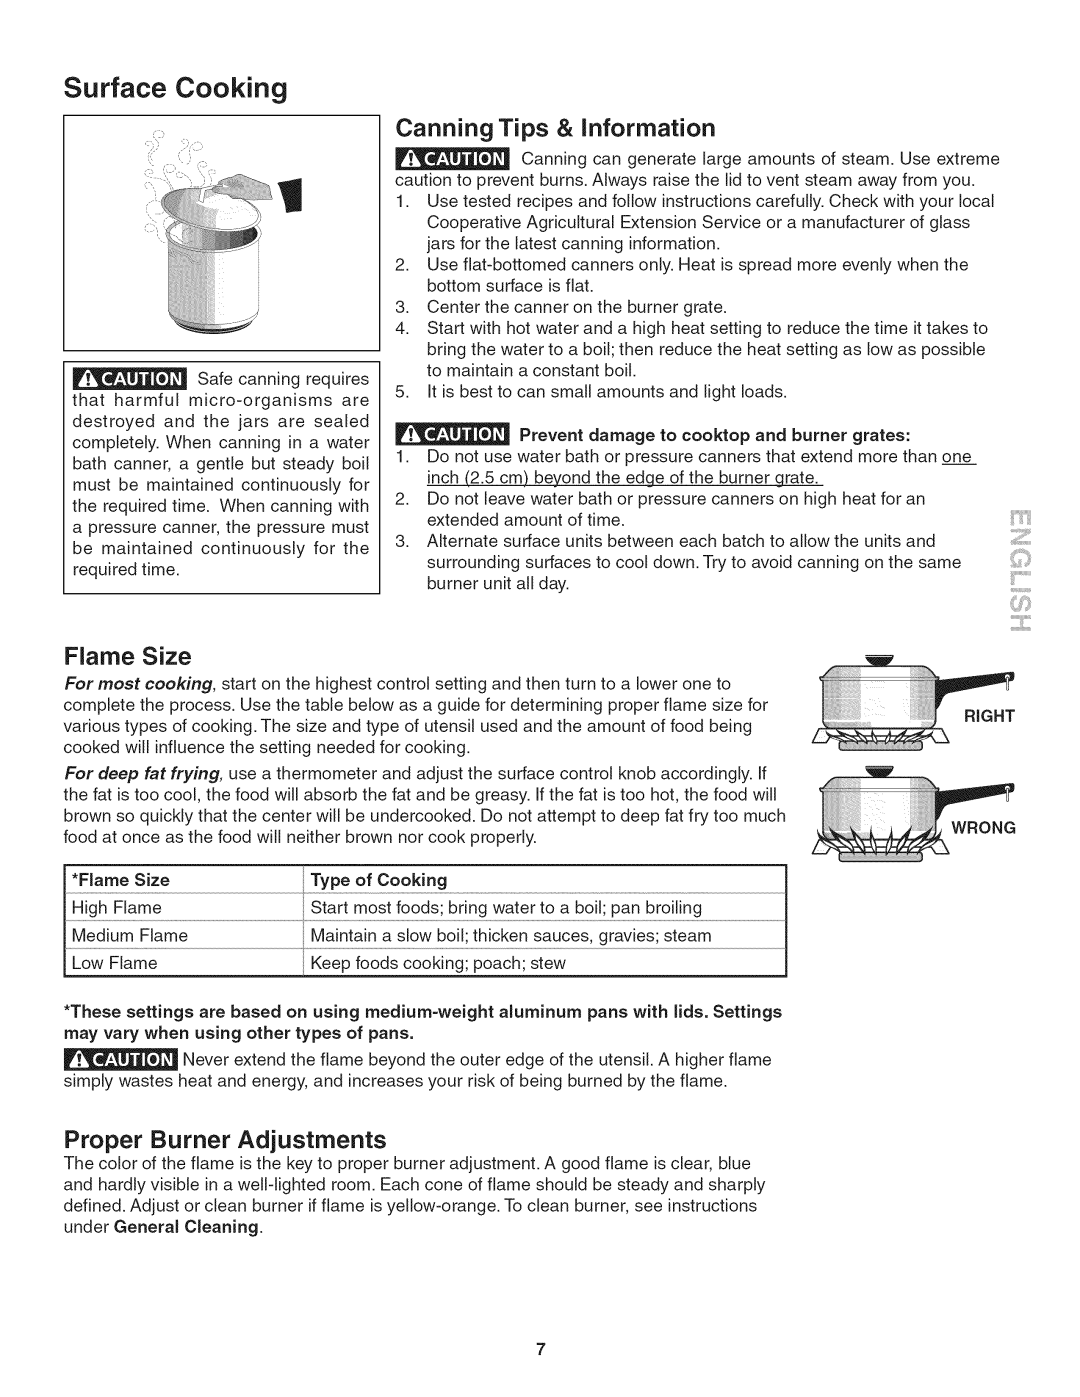 Kenmore 790.324, 3241 manual Canning Tips & Information, Proper Burner Adjustments, Surface Cooking, Flame Size 